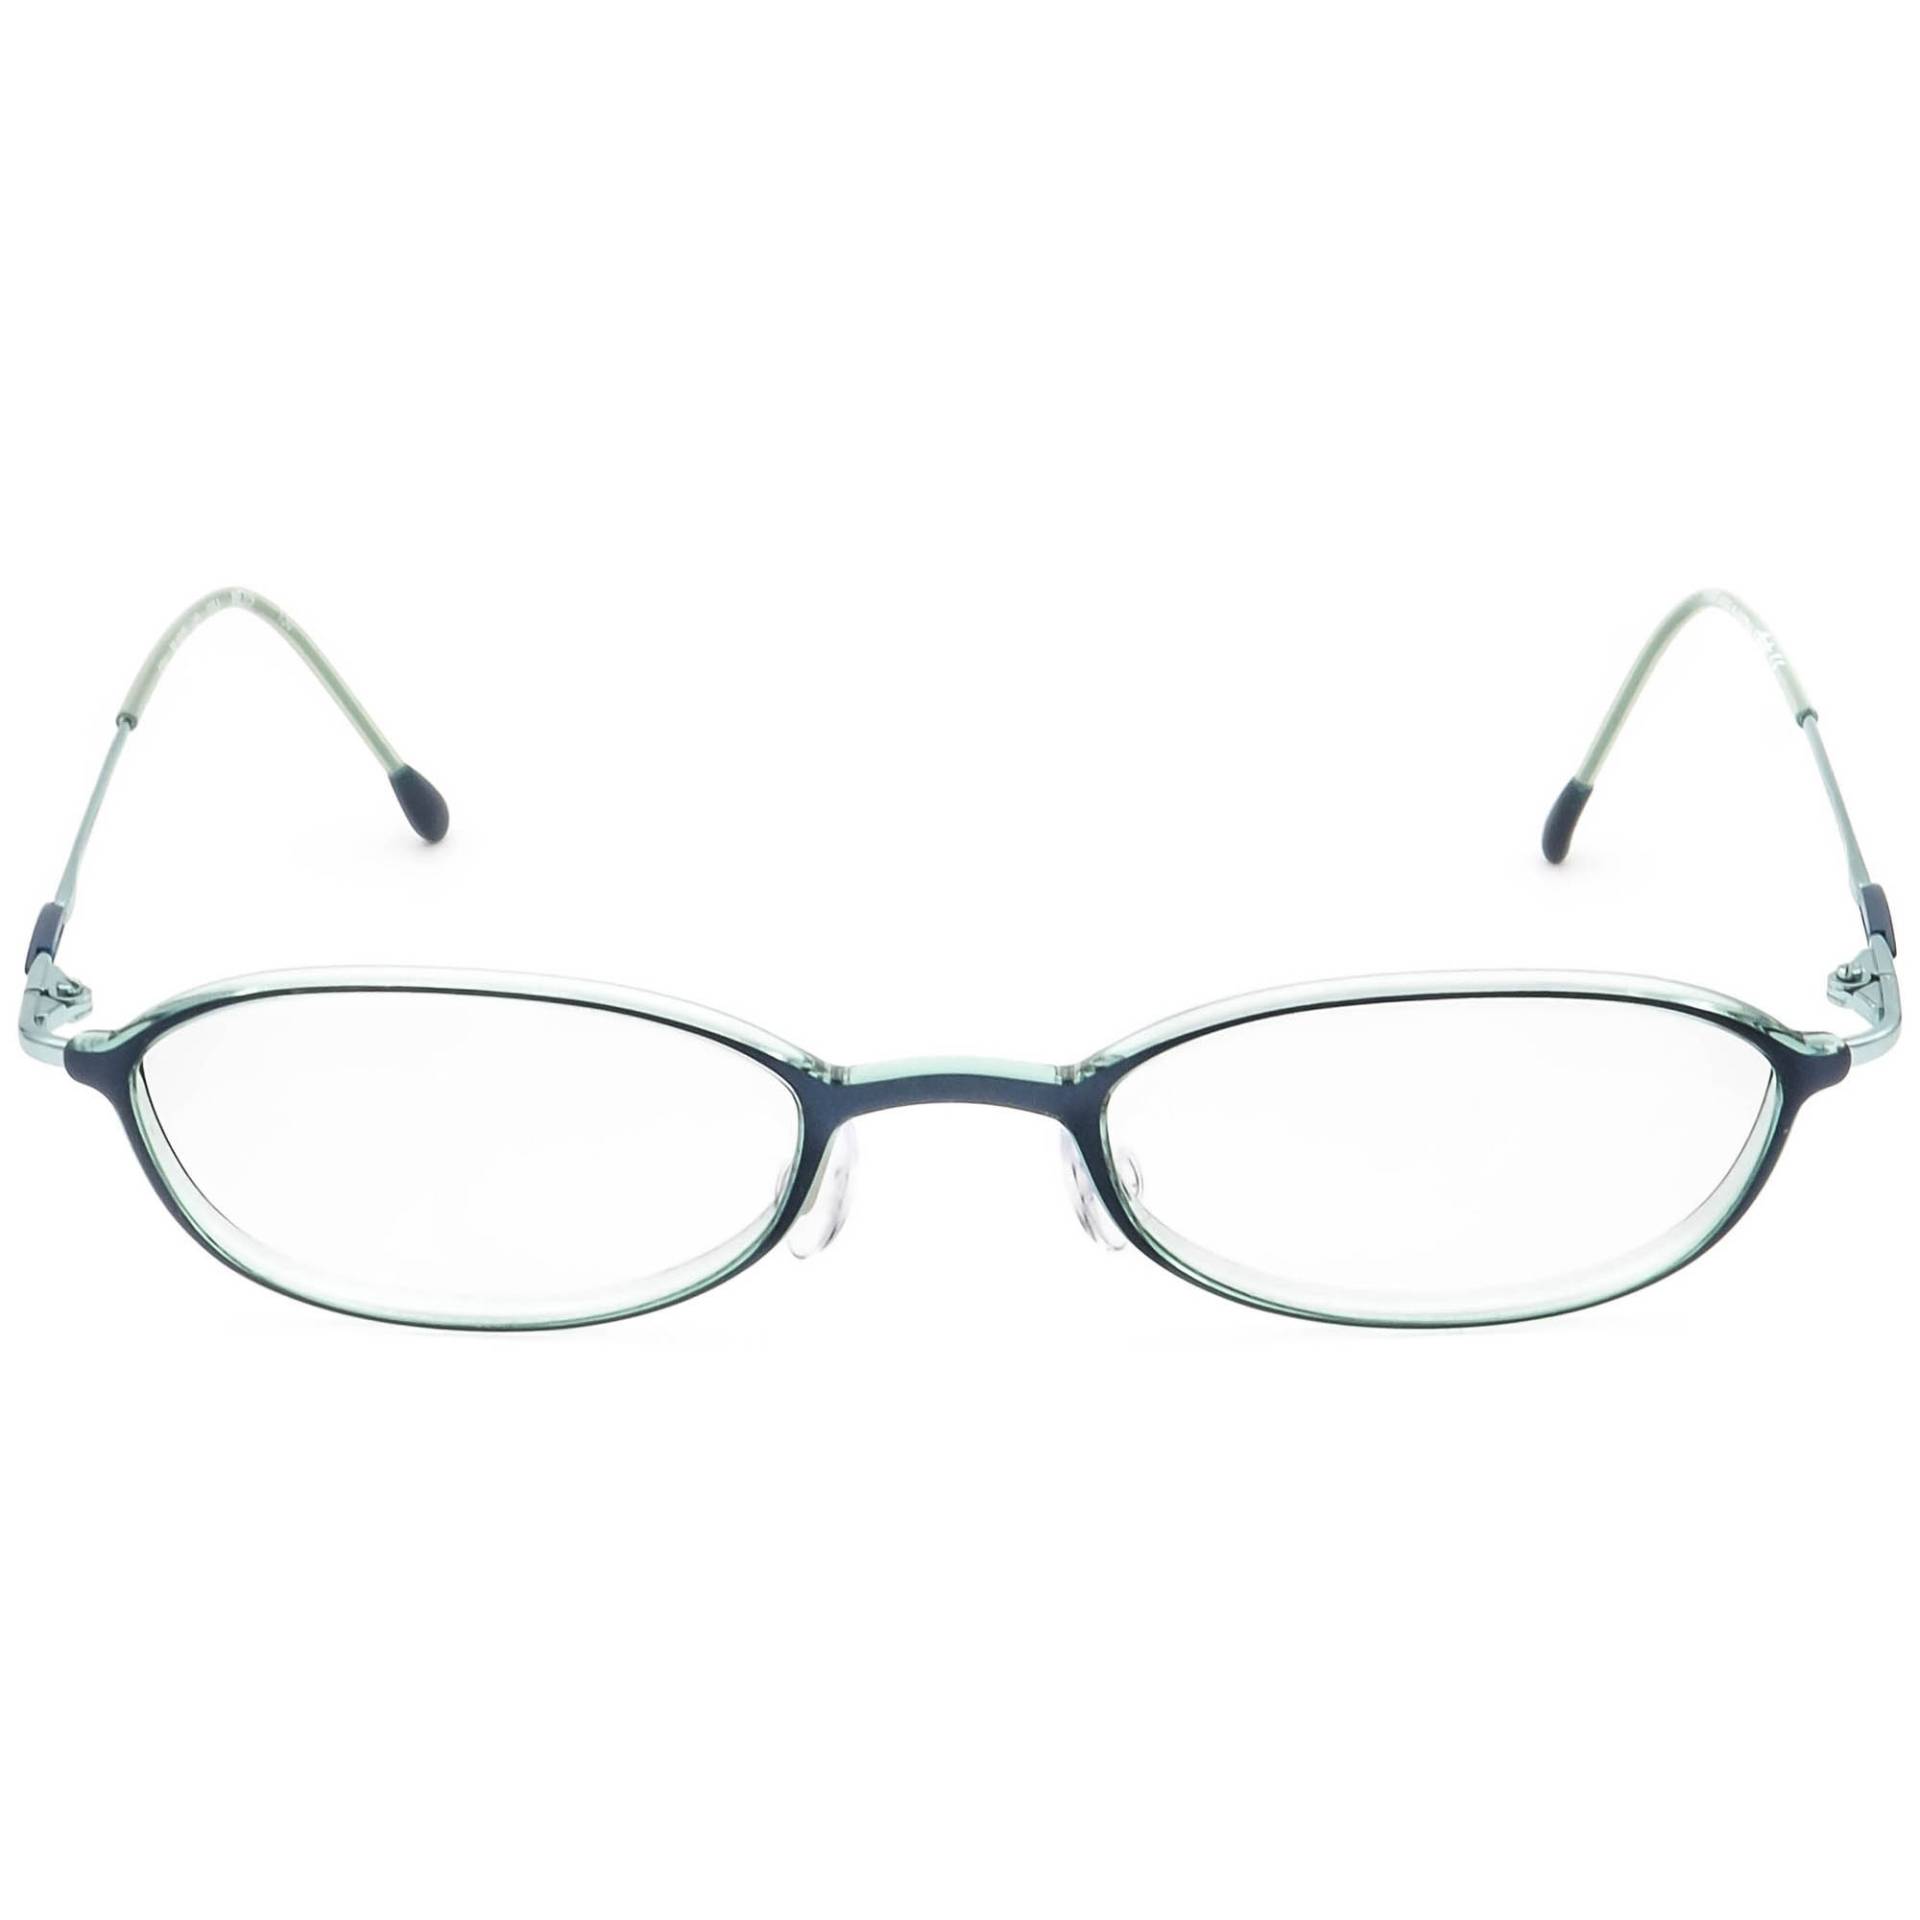 Silhouette Brille Spx M 1943 /40 6054 Blau Oval Rahmen Österreich 46[]19 130 von AfsharOptics